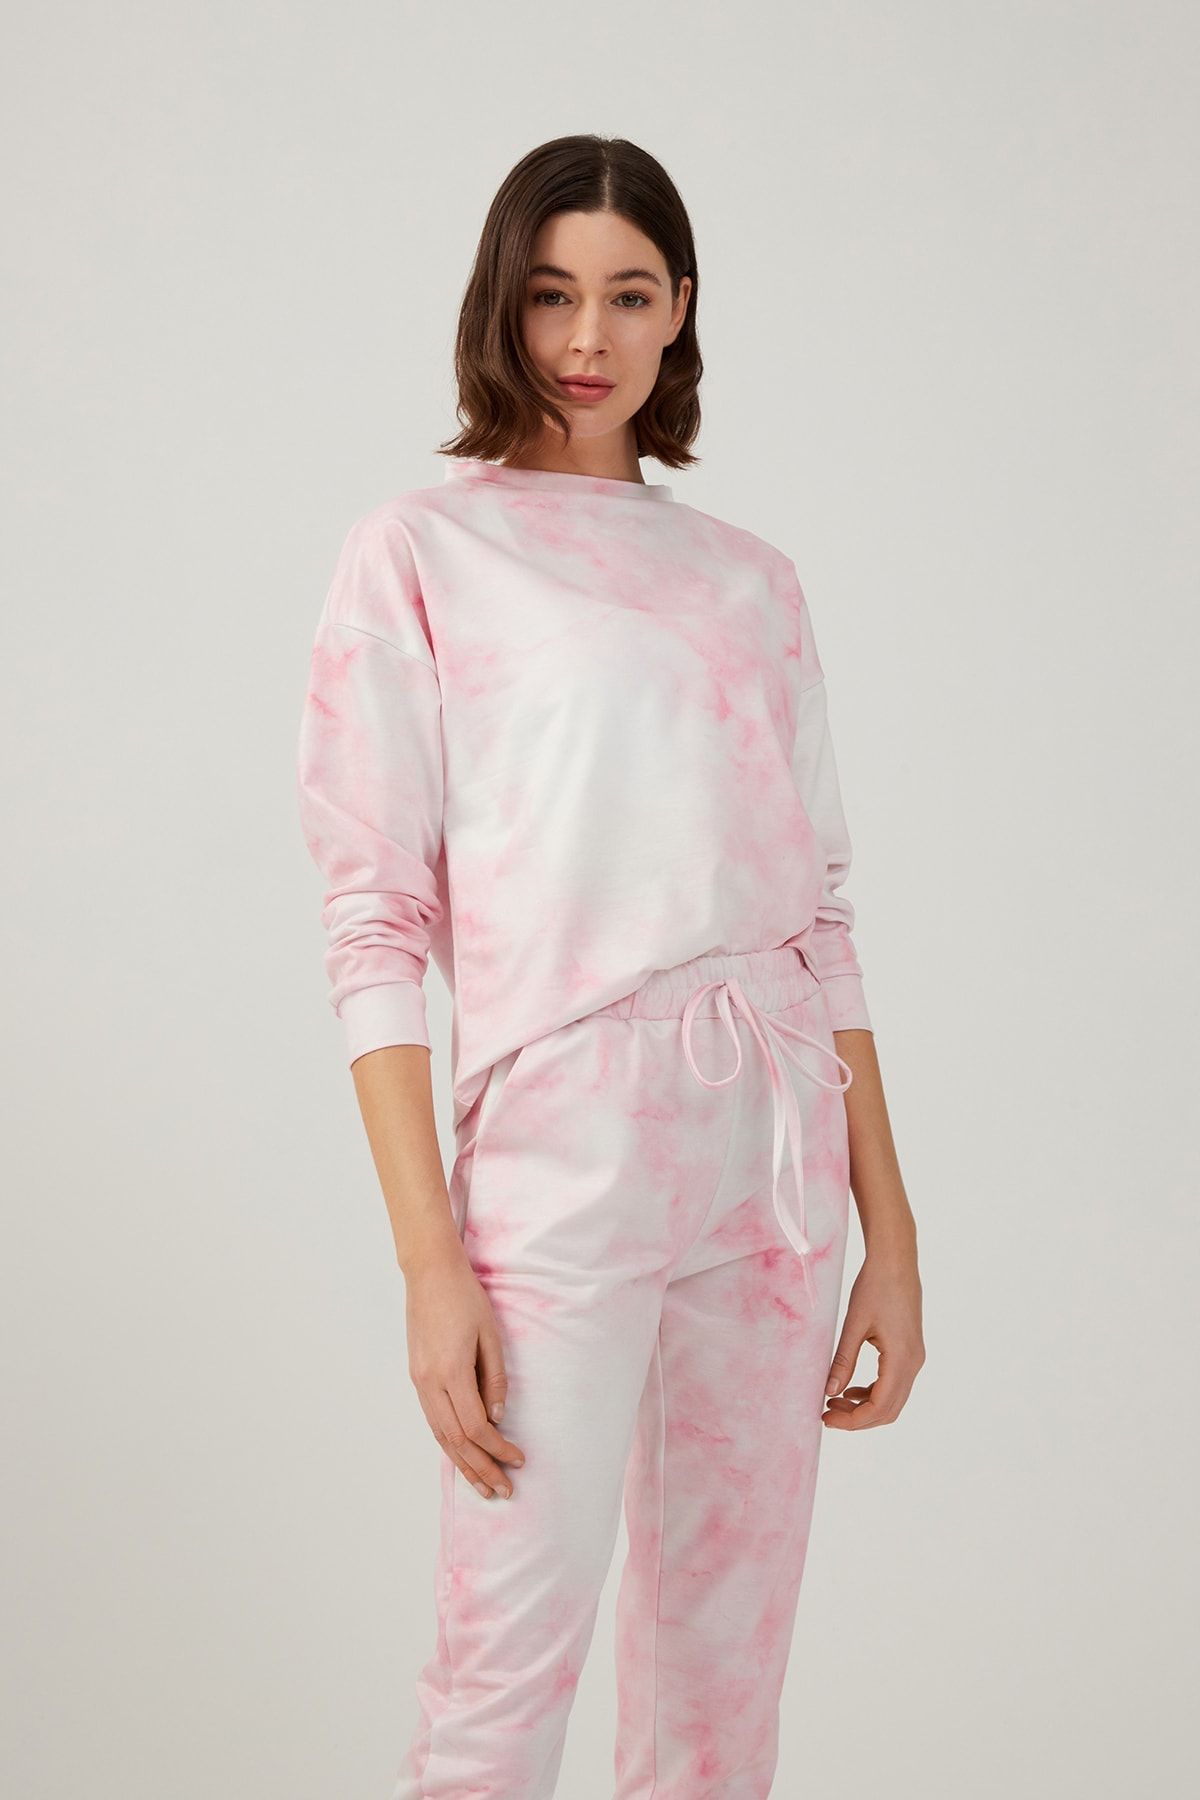 LOS OJOS Kadın Pembe Batik Desenli Pijama Takımı Tie-dye